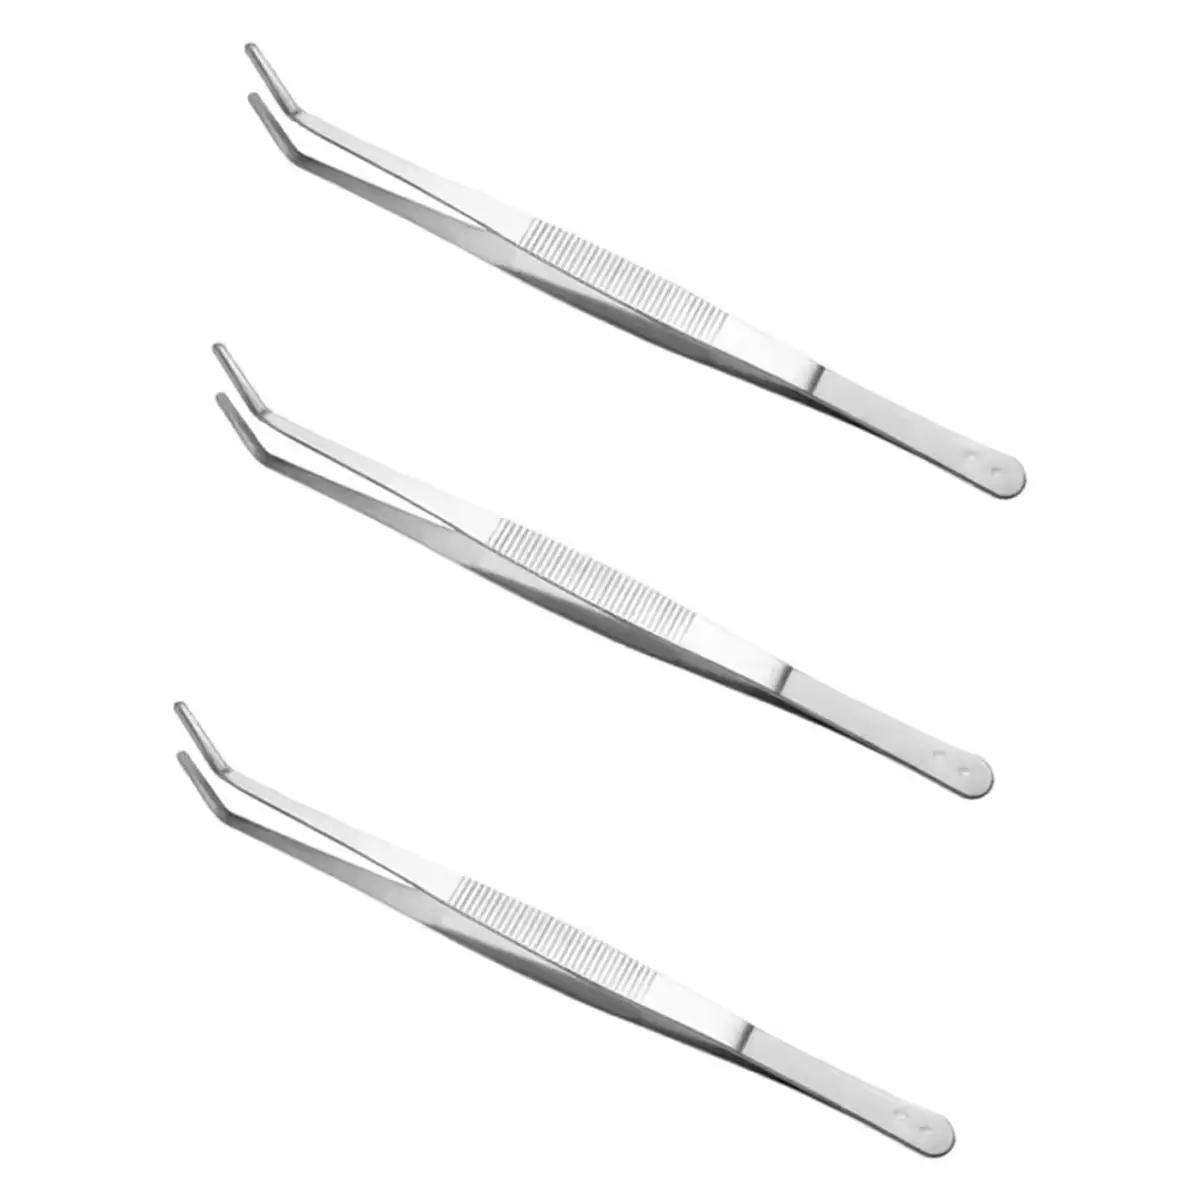 Dentallabor 3-teilig Edelstahl Mundspiegel Pinzette Zahnstoßstoolsets Dentalwerkzeuge Untersuchungs-Set 3 Pecs mit hoher Qualität